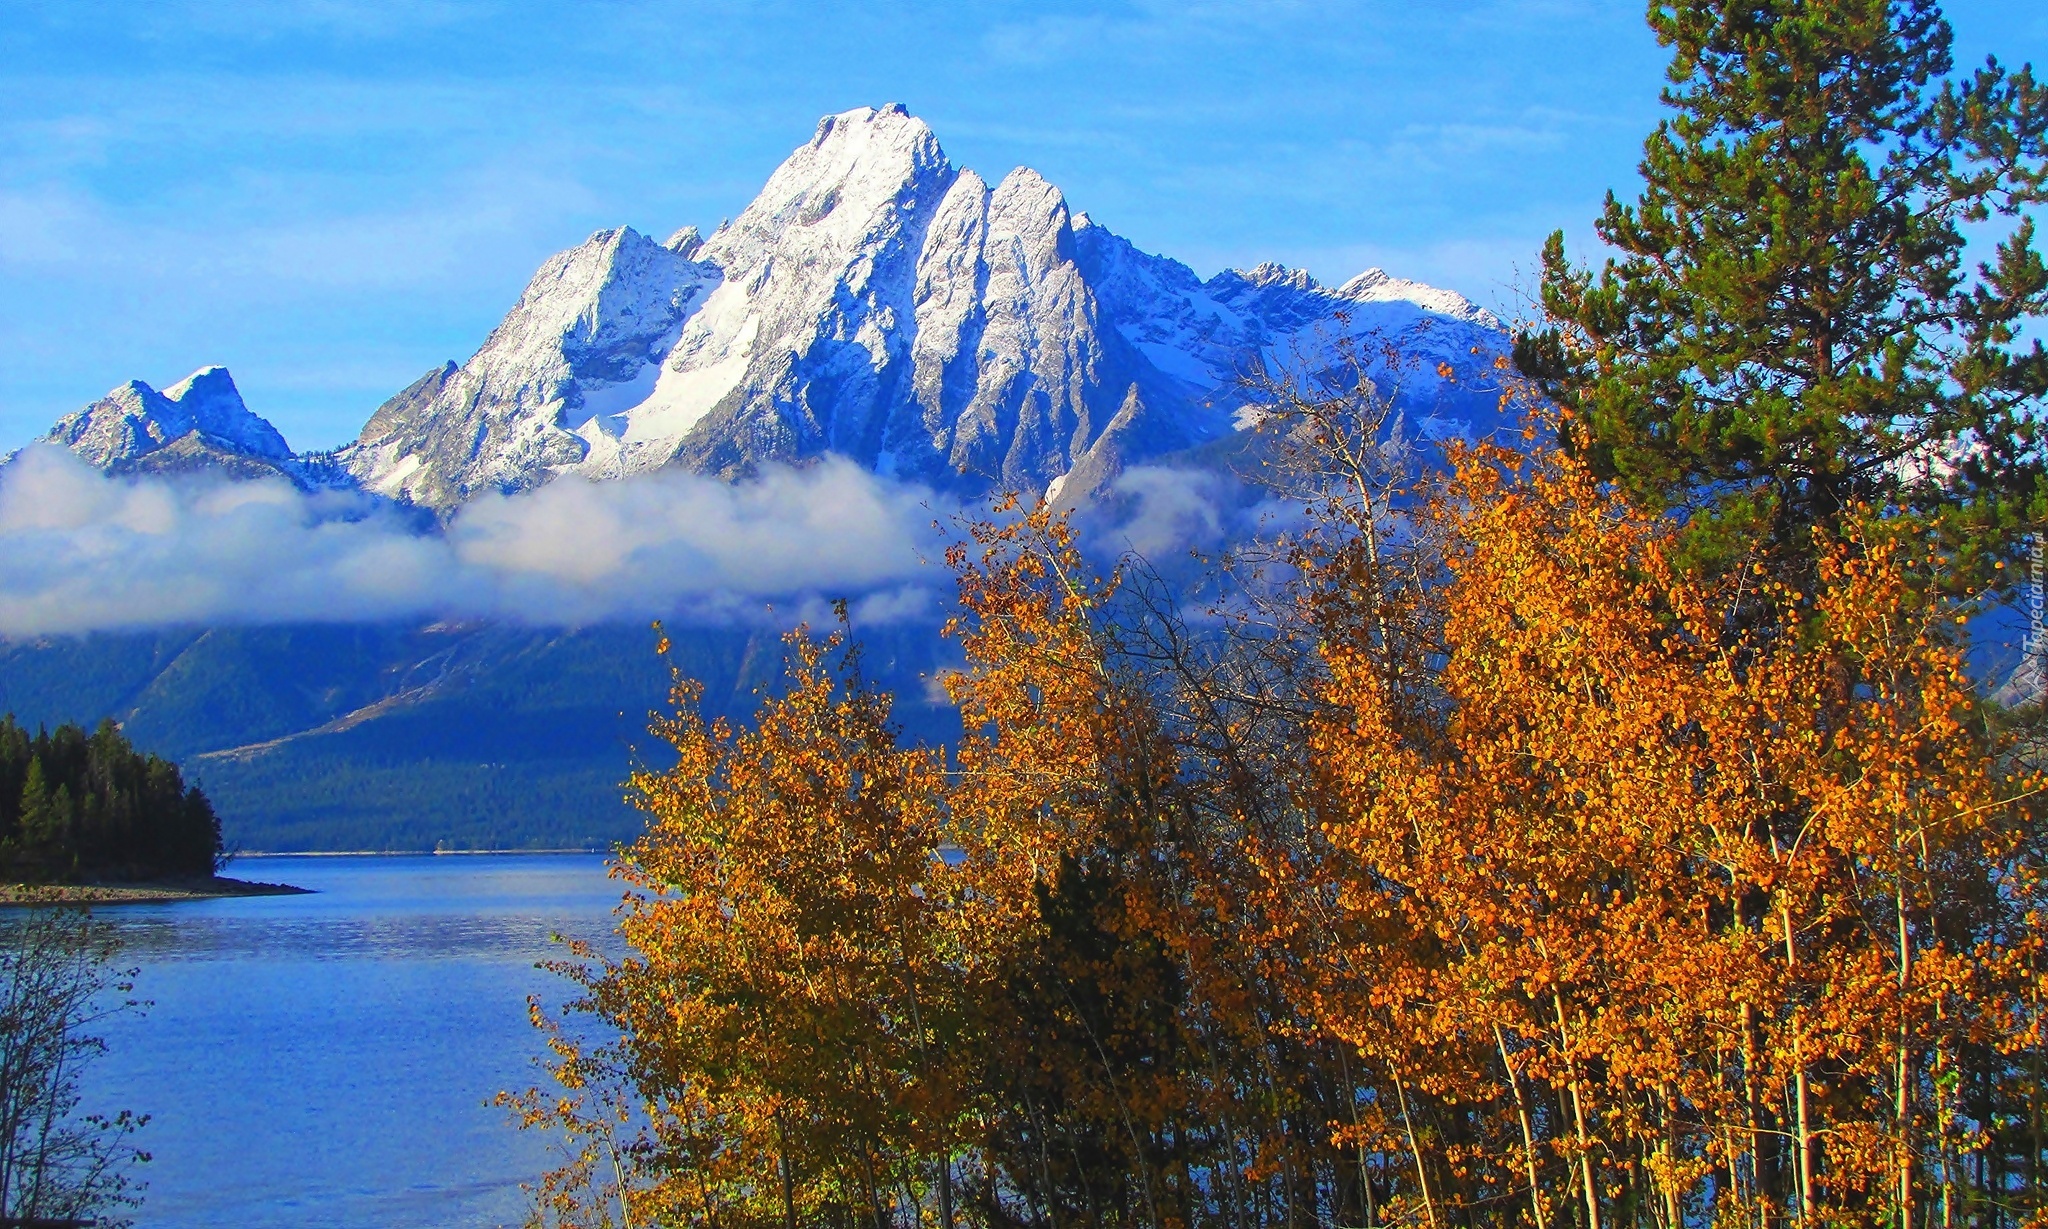 Stany Zjednoczone, Stan Wyoming, Park Narodowy Grand Teton, Góry, Szczyt Mount Moran, Drzewa, Jezioro Jackson Lake